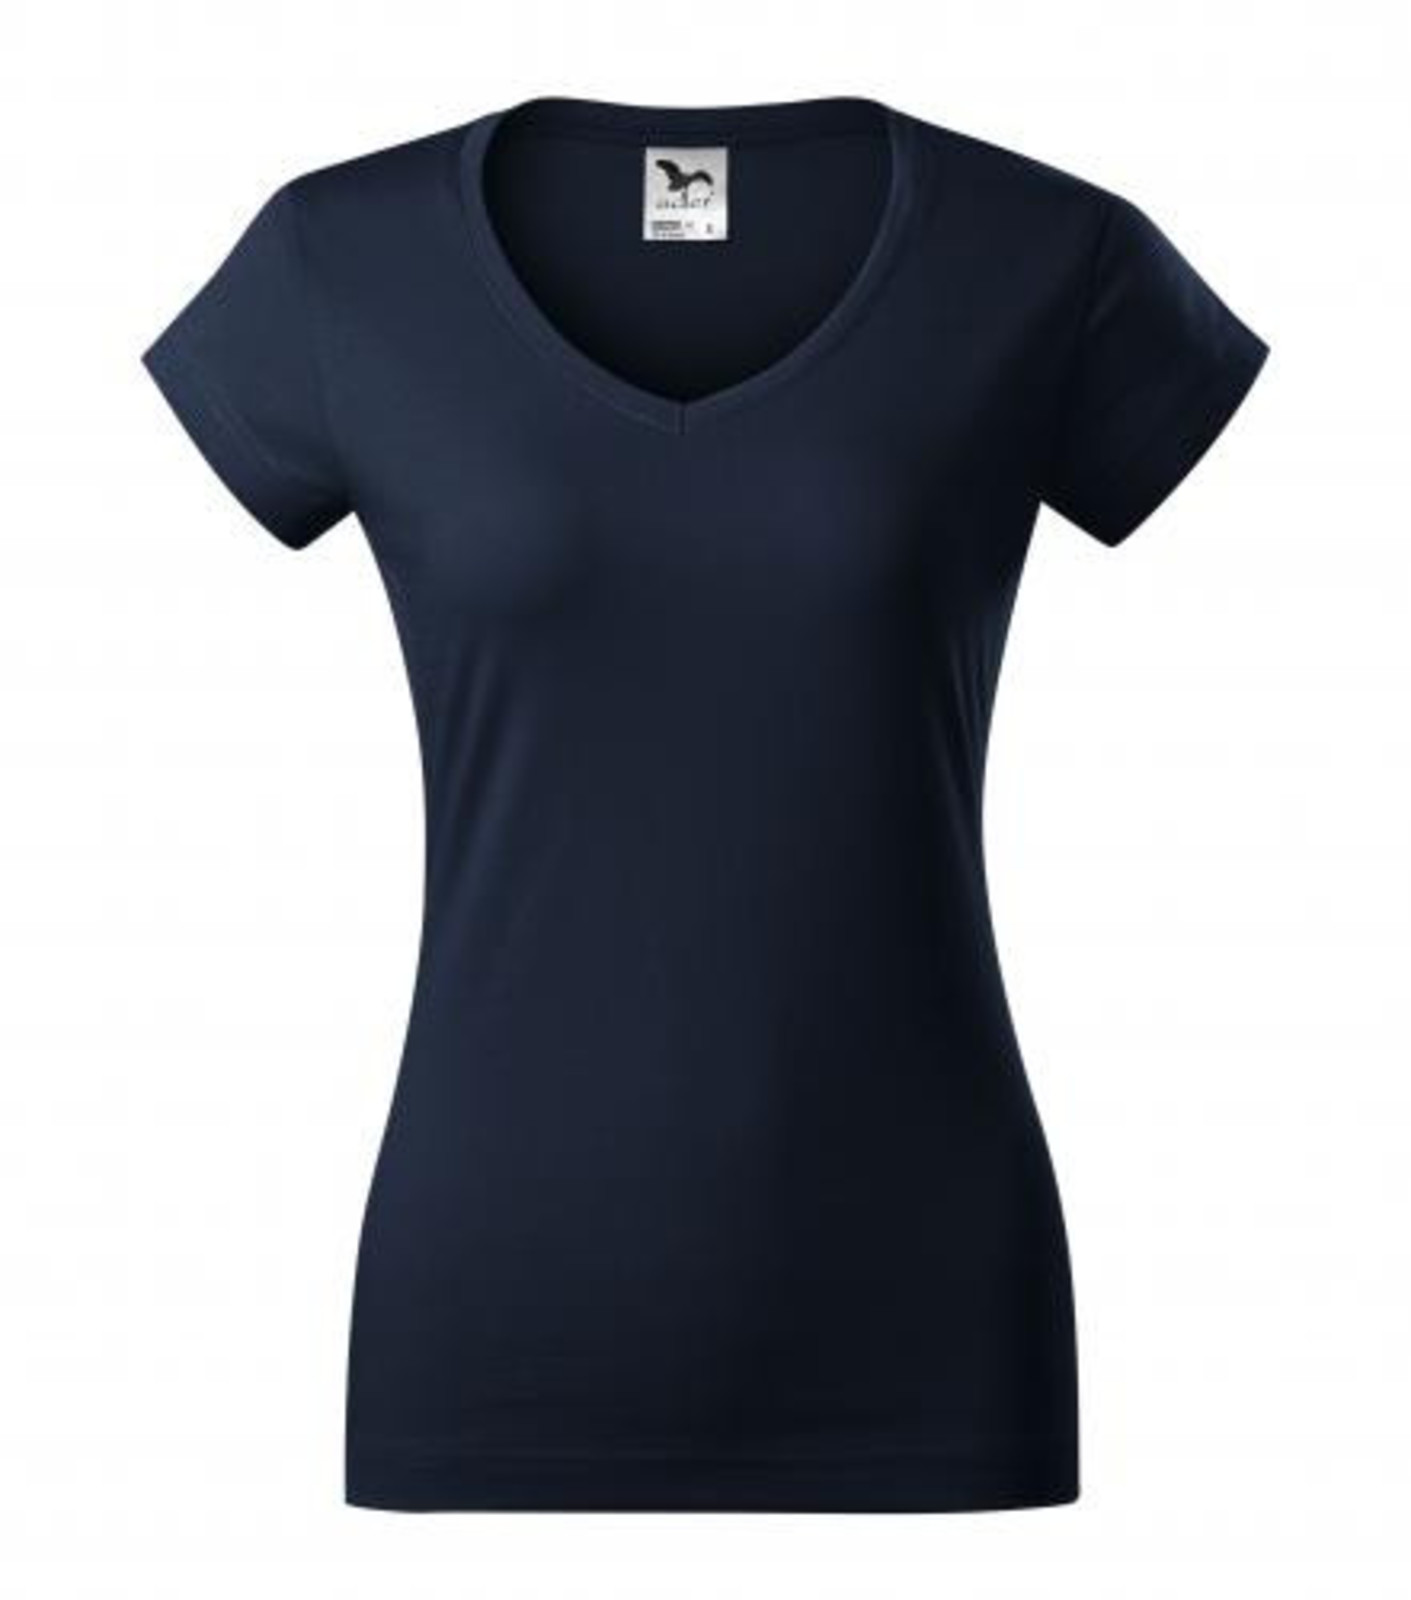 Dámske tričko s V výstrihom Adler Fit V-Neck 162 - veľkosť: M, farba: tmavo modrá